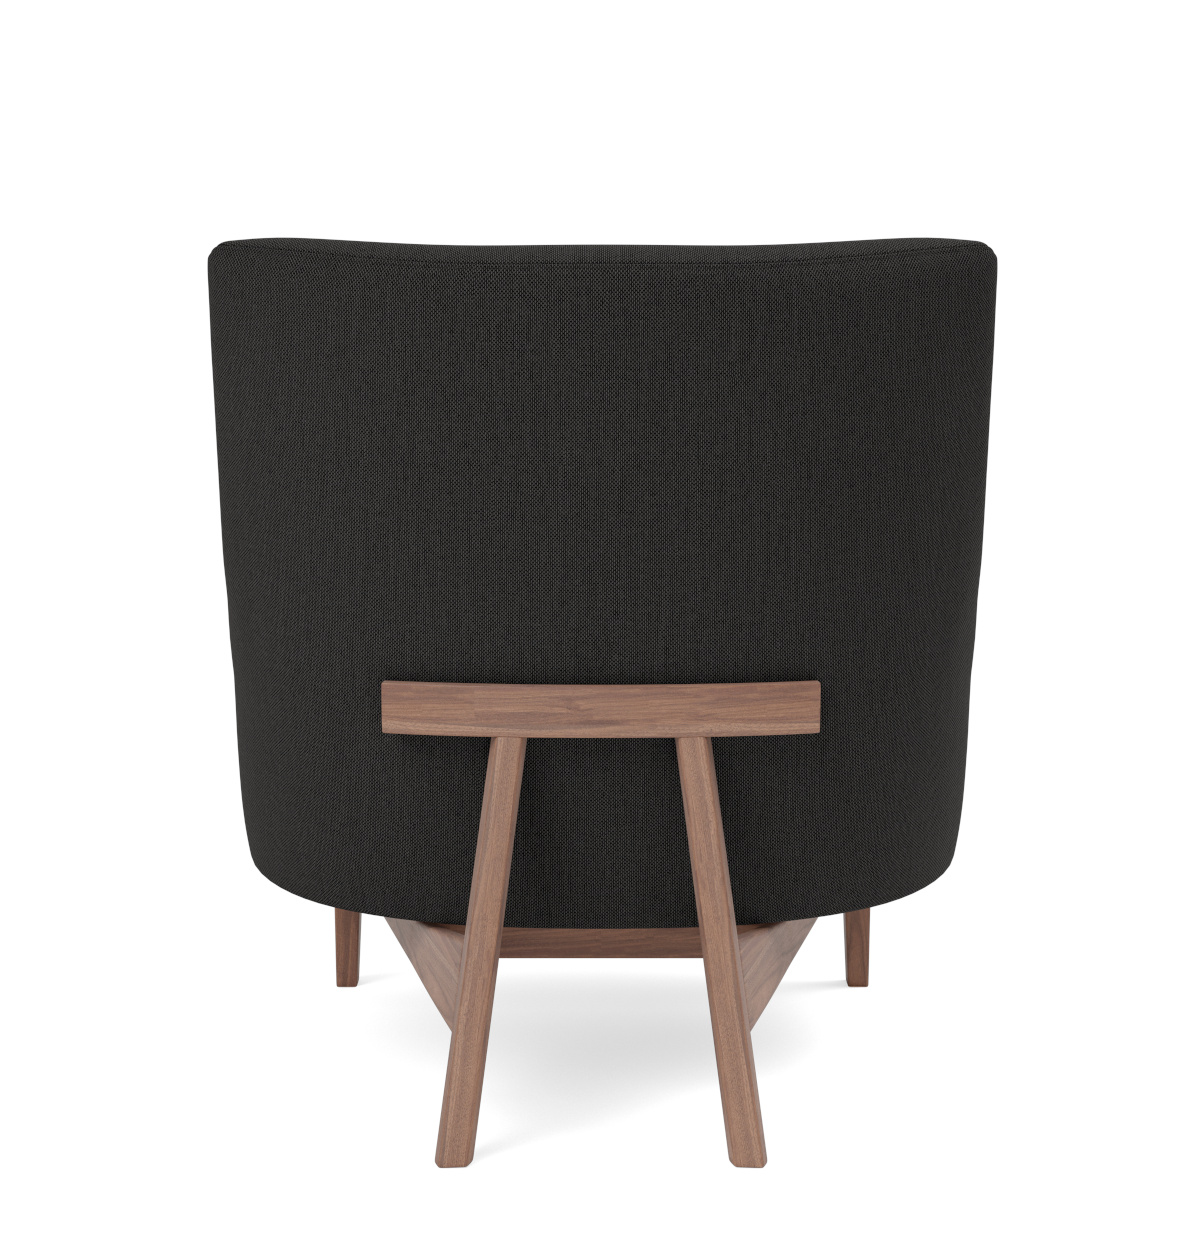 A-Chair Wood Base, eiche lackiert / re-wool 128